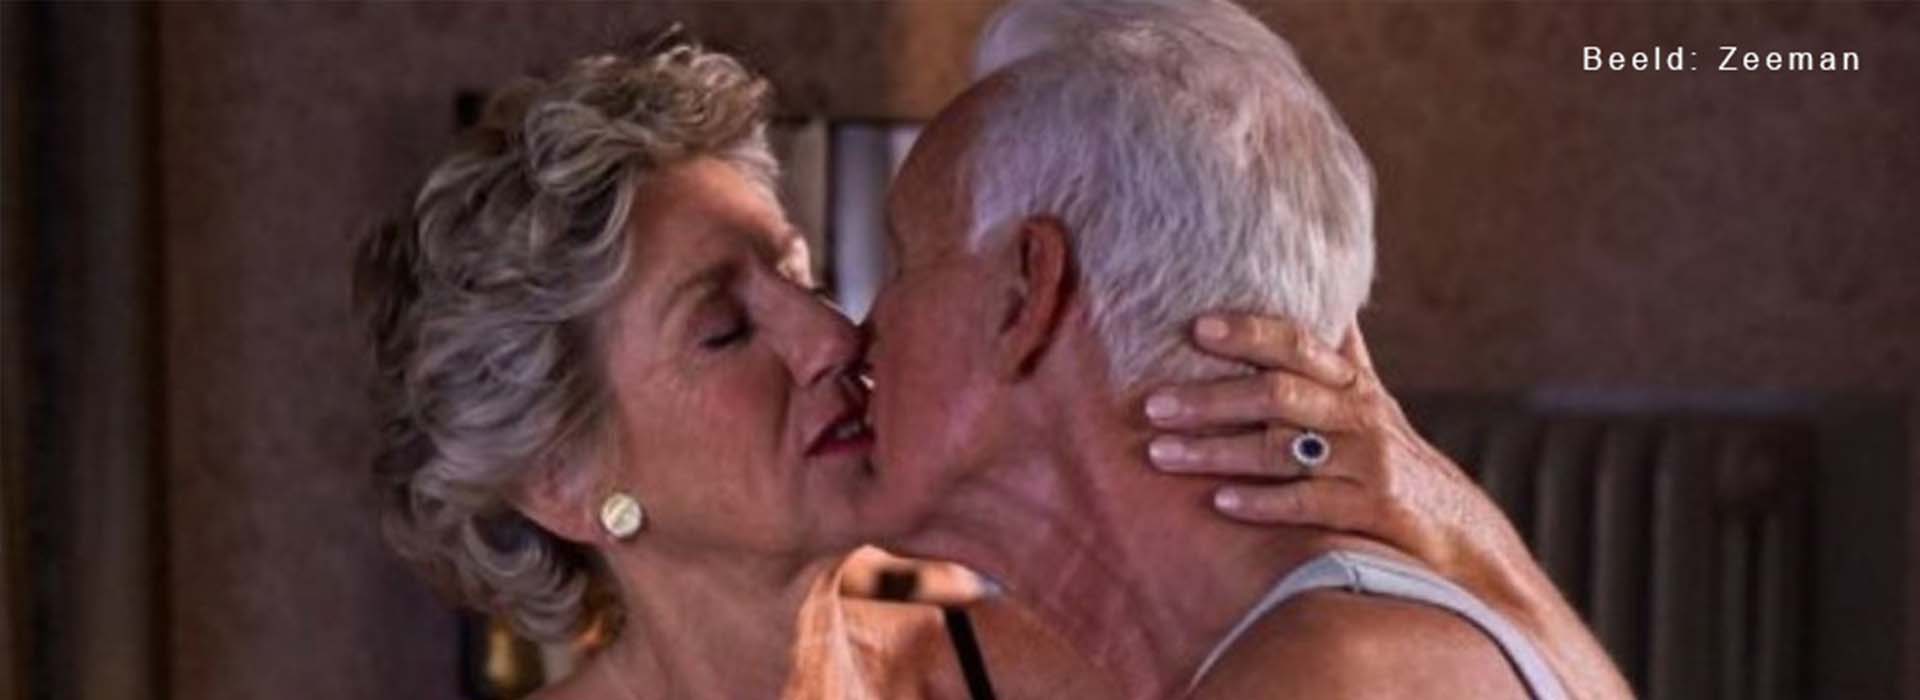 Taboe op intimiteit bij ouderen?